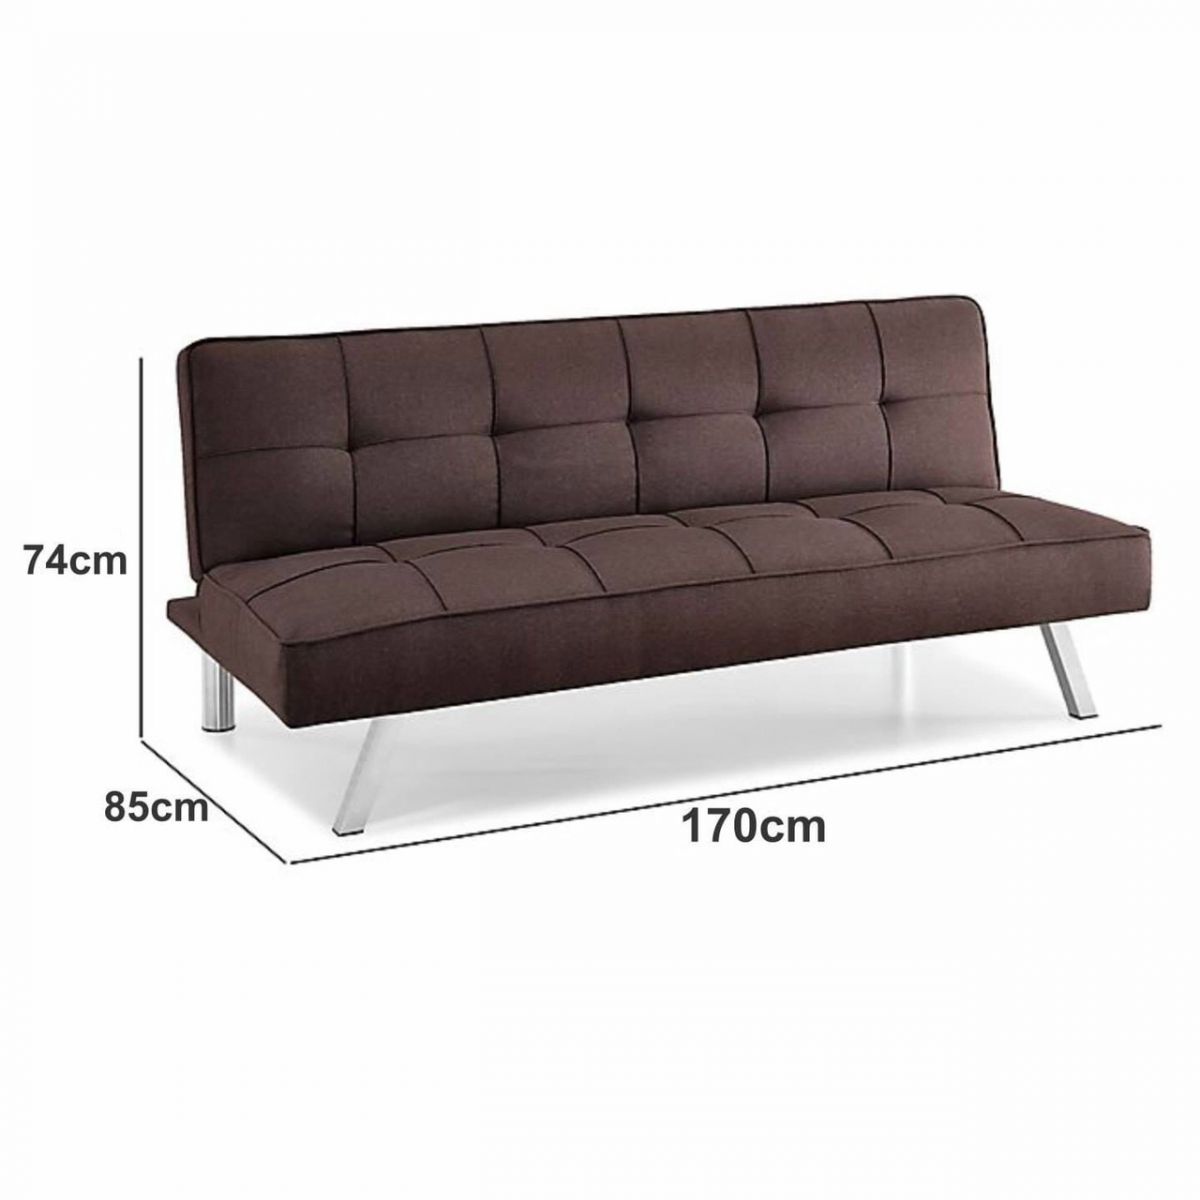 Mẫu ghế Sofa giường ngủ thông minh vải nỉ giá rẻ tphcm chỉ với 2 triệu